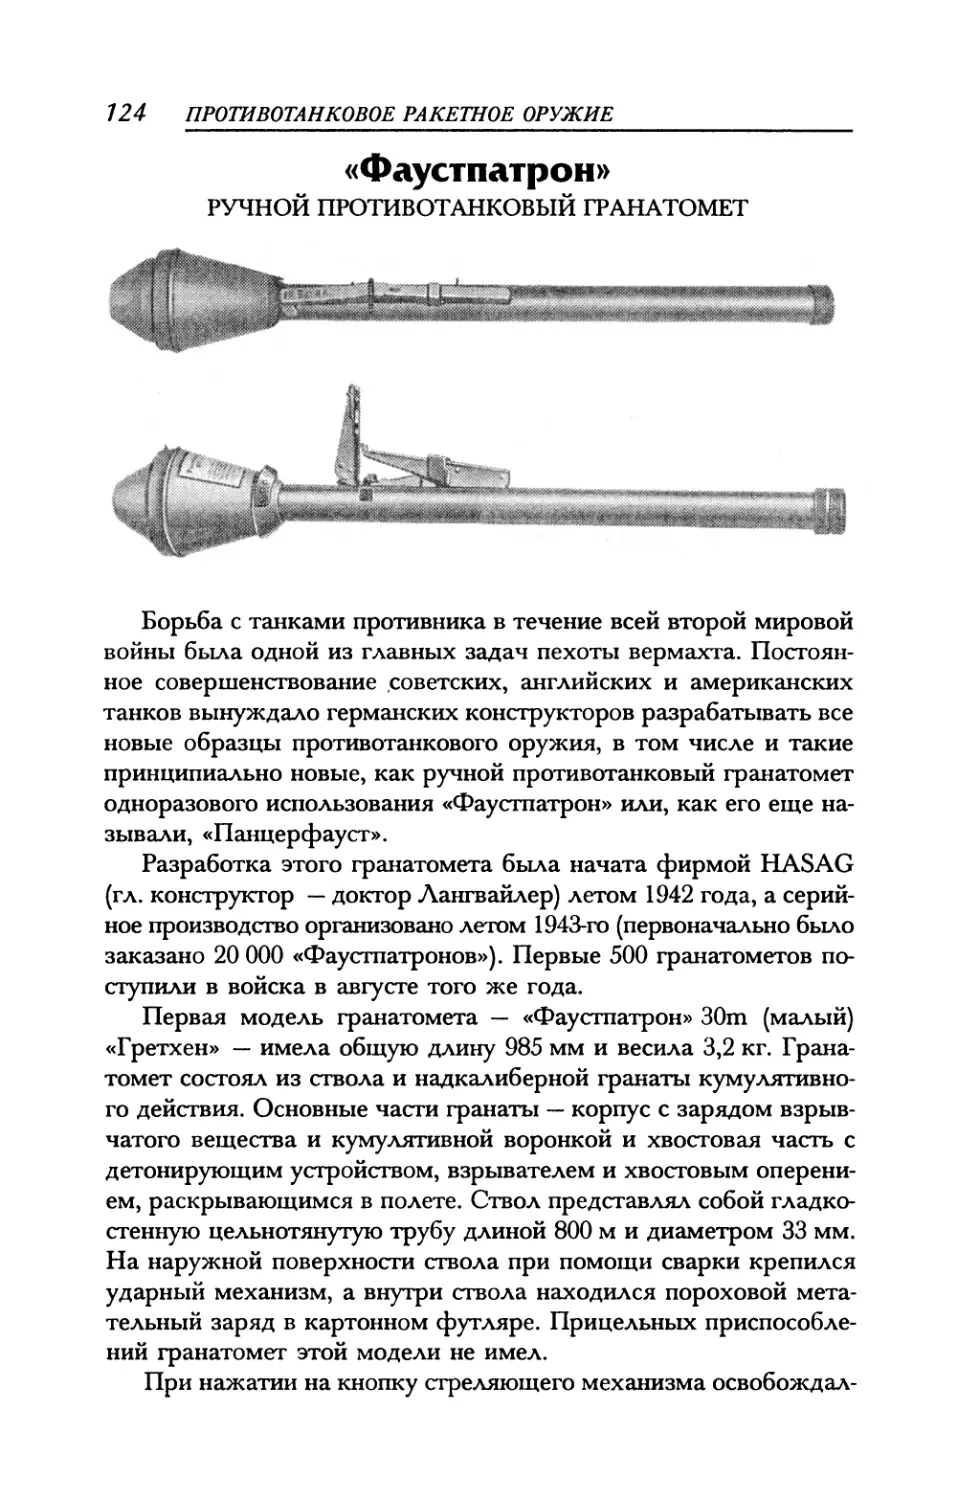 «Фаустпатрон» Ручной противотанковый гранатомет